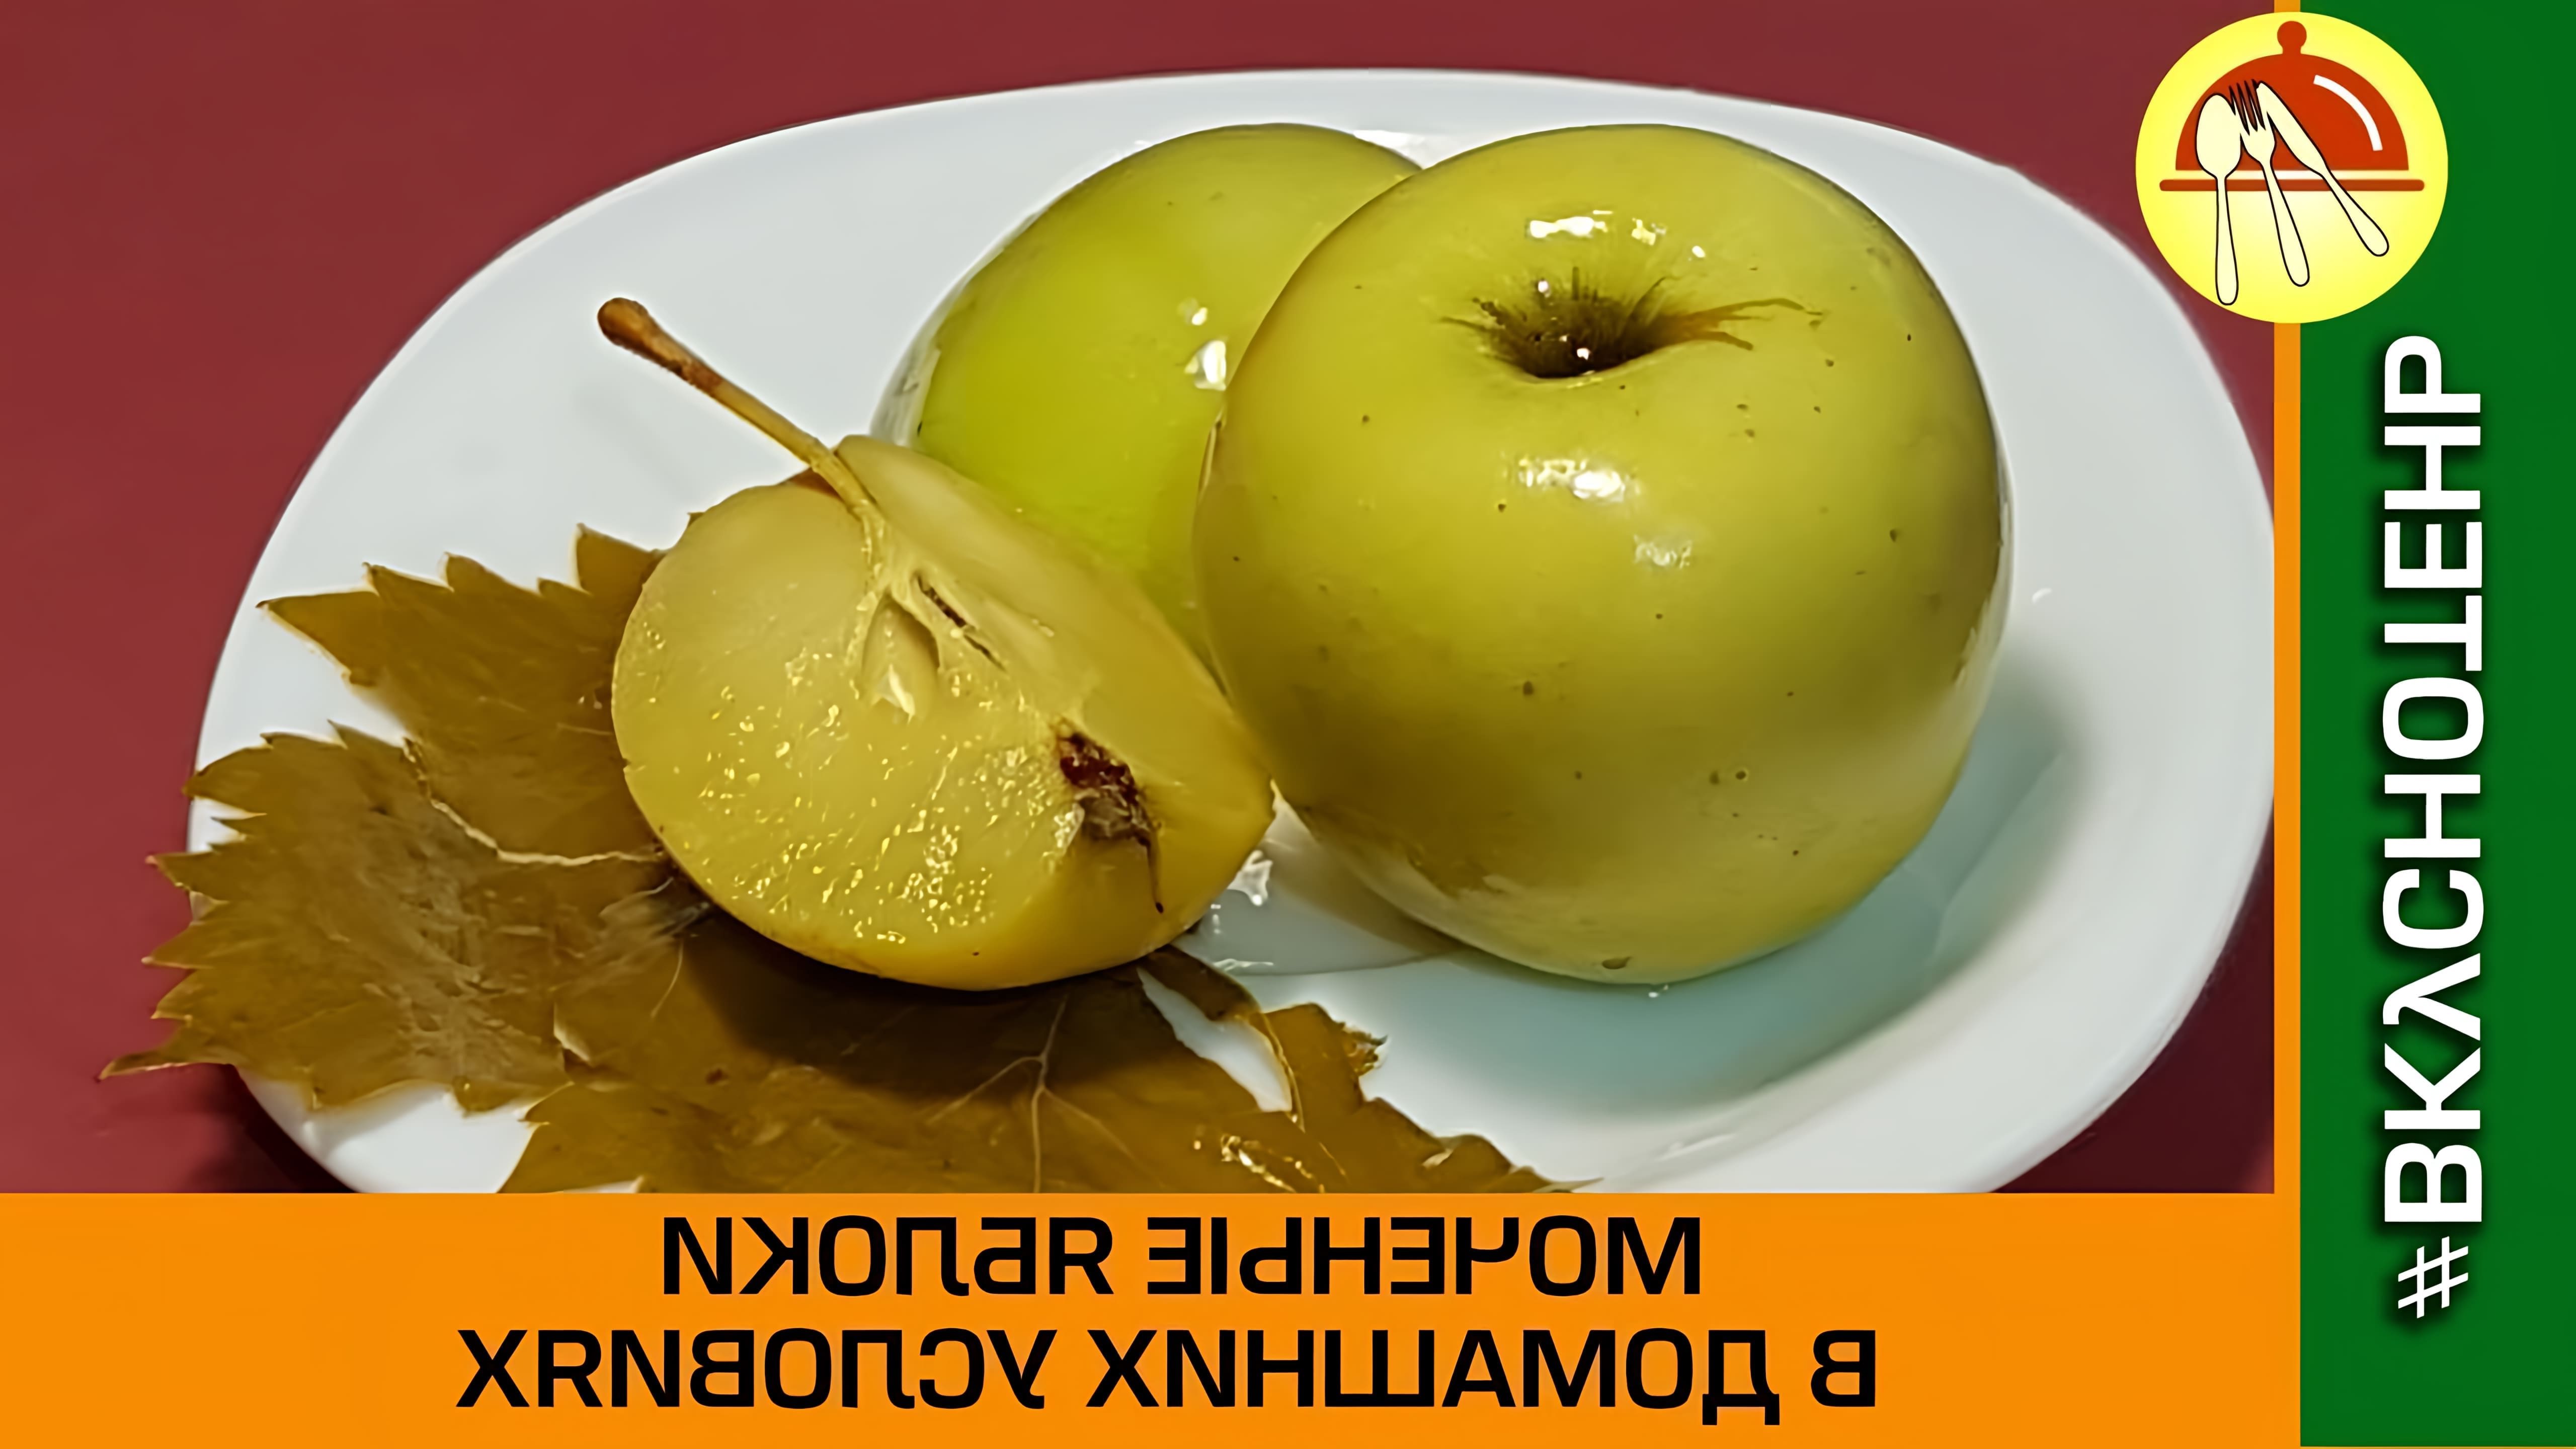 В этом видео демонстрируется процесс приготовления моченых яблок в домашних условиях